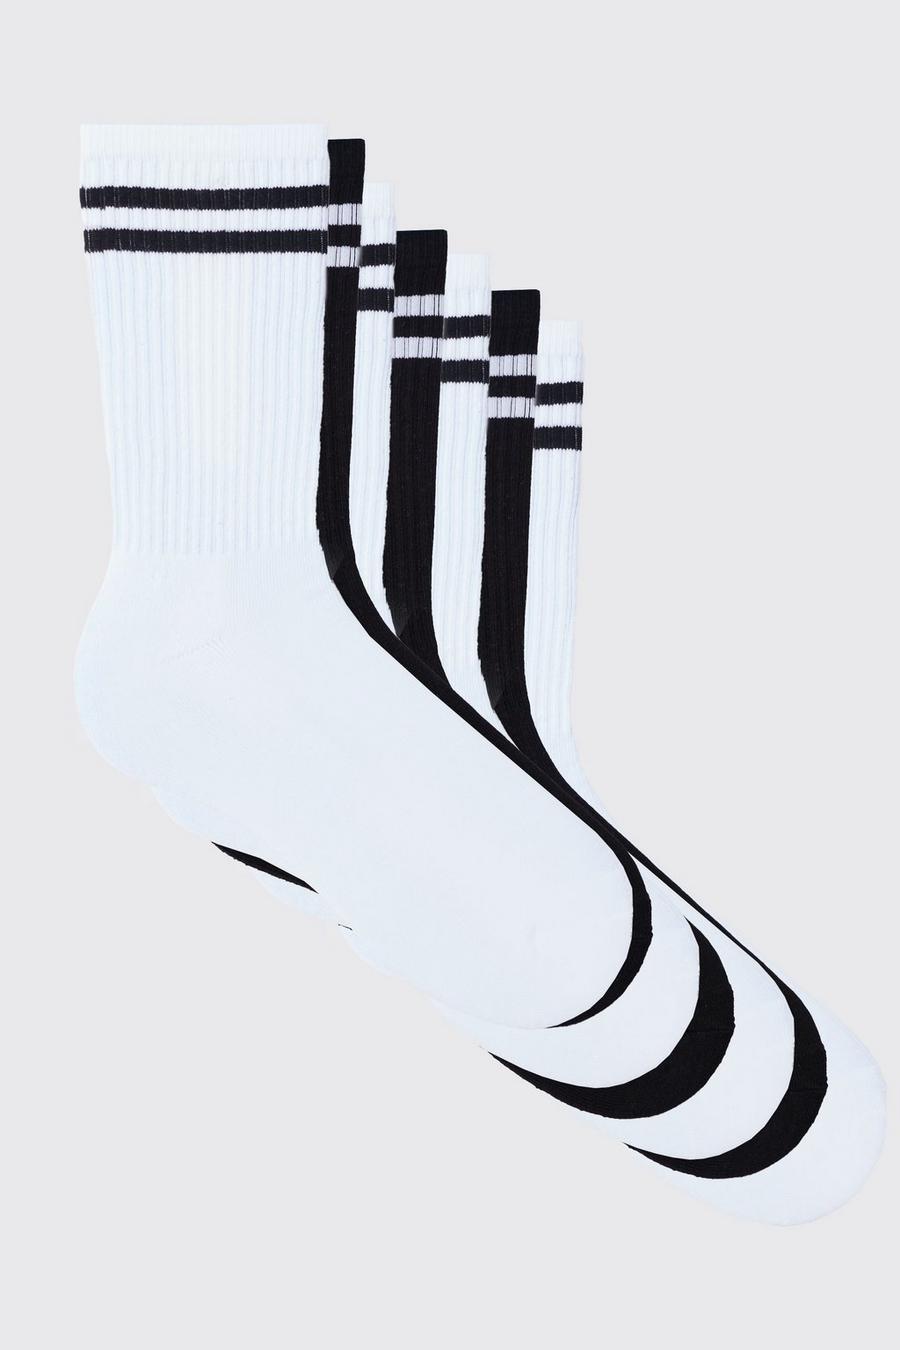 Pack de 7 pares de calcetines deportivos con rayas, Multi image number 1